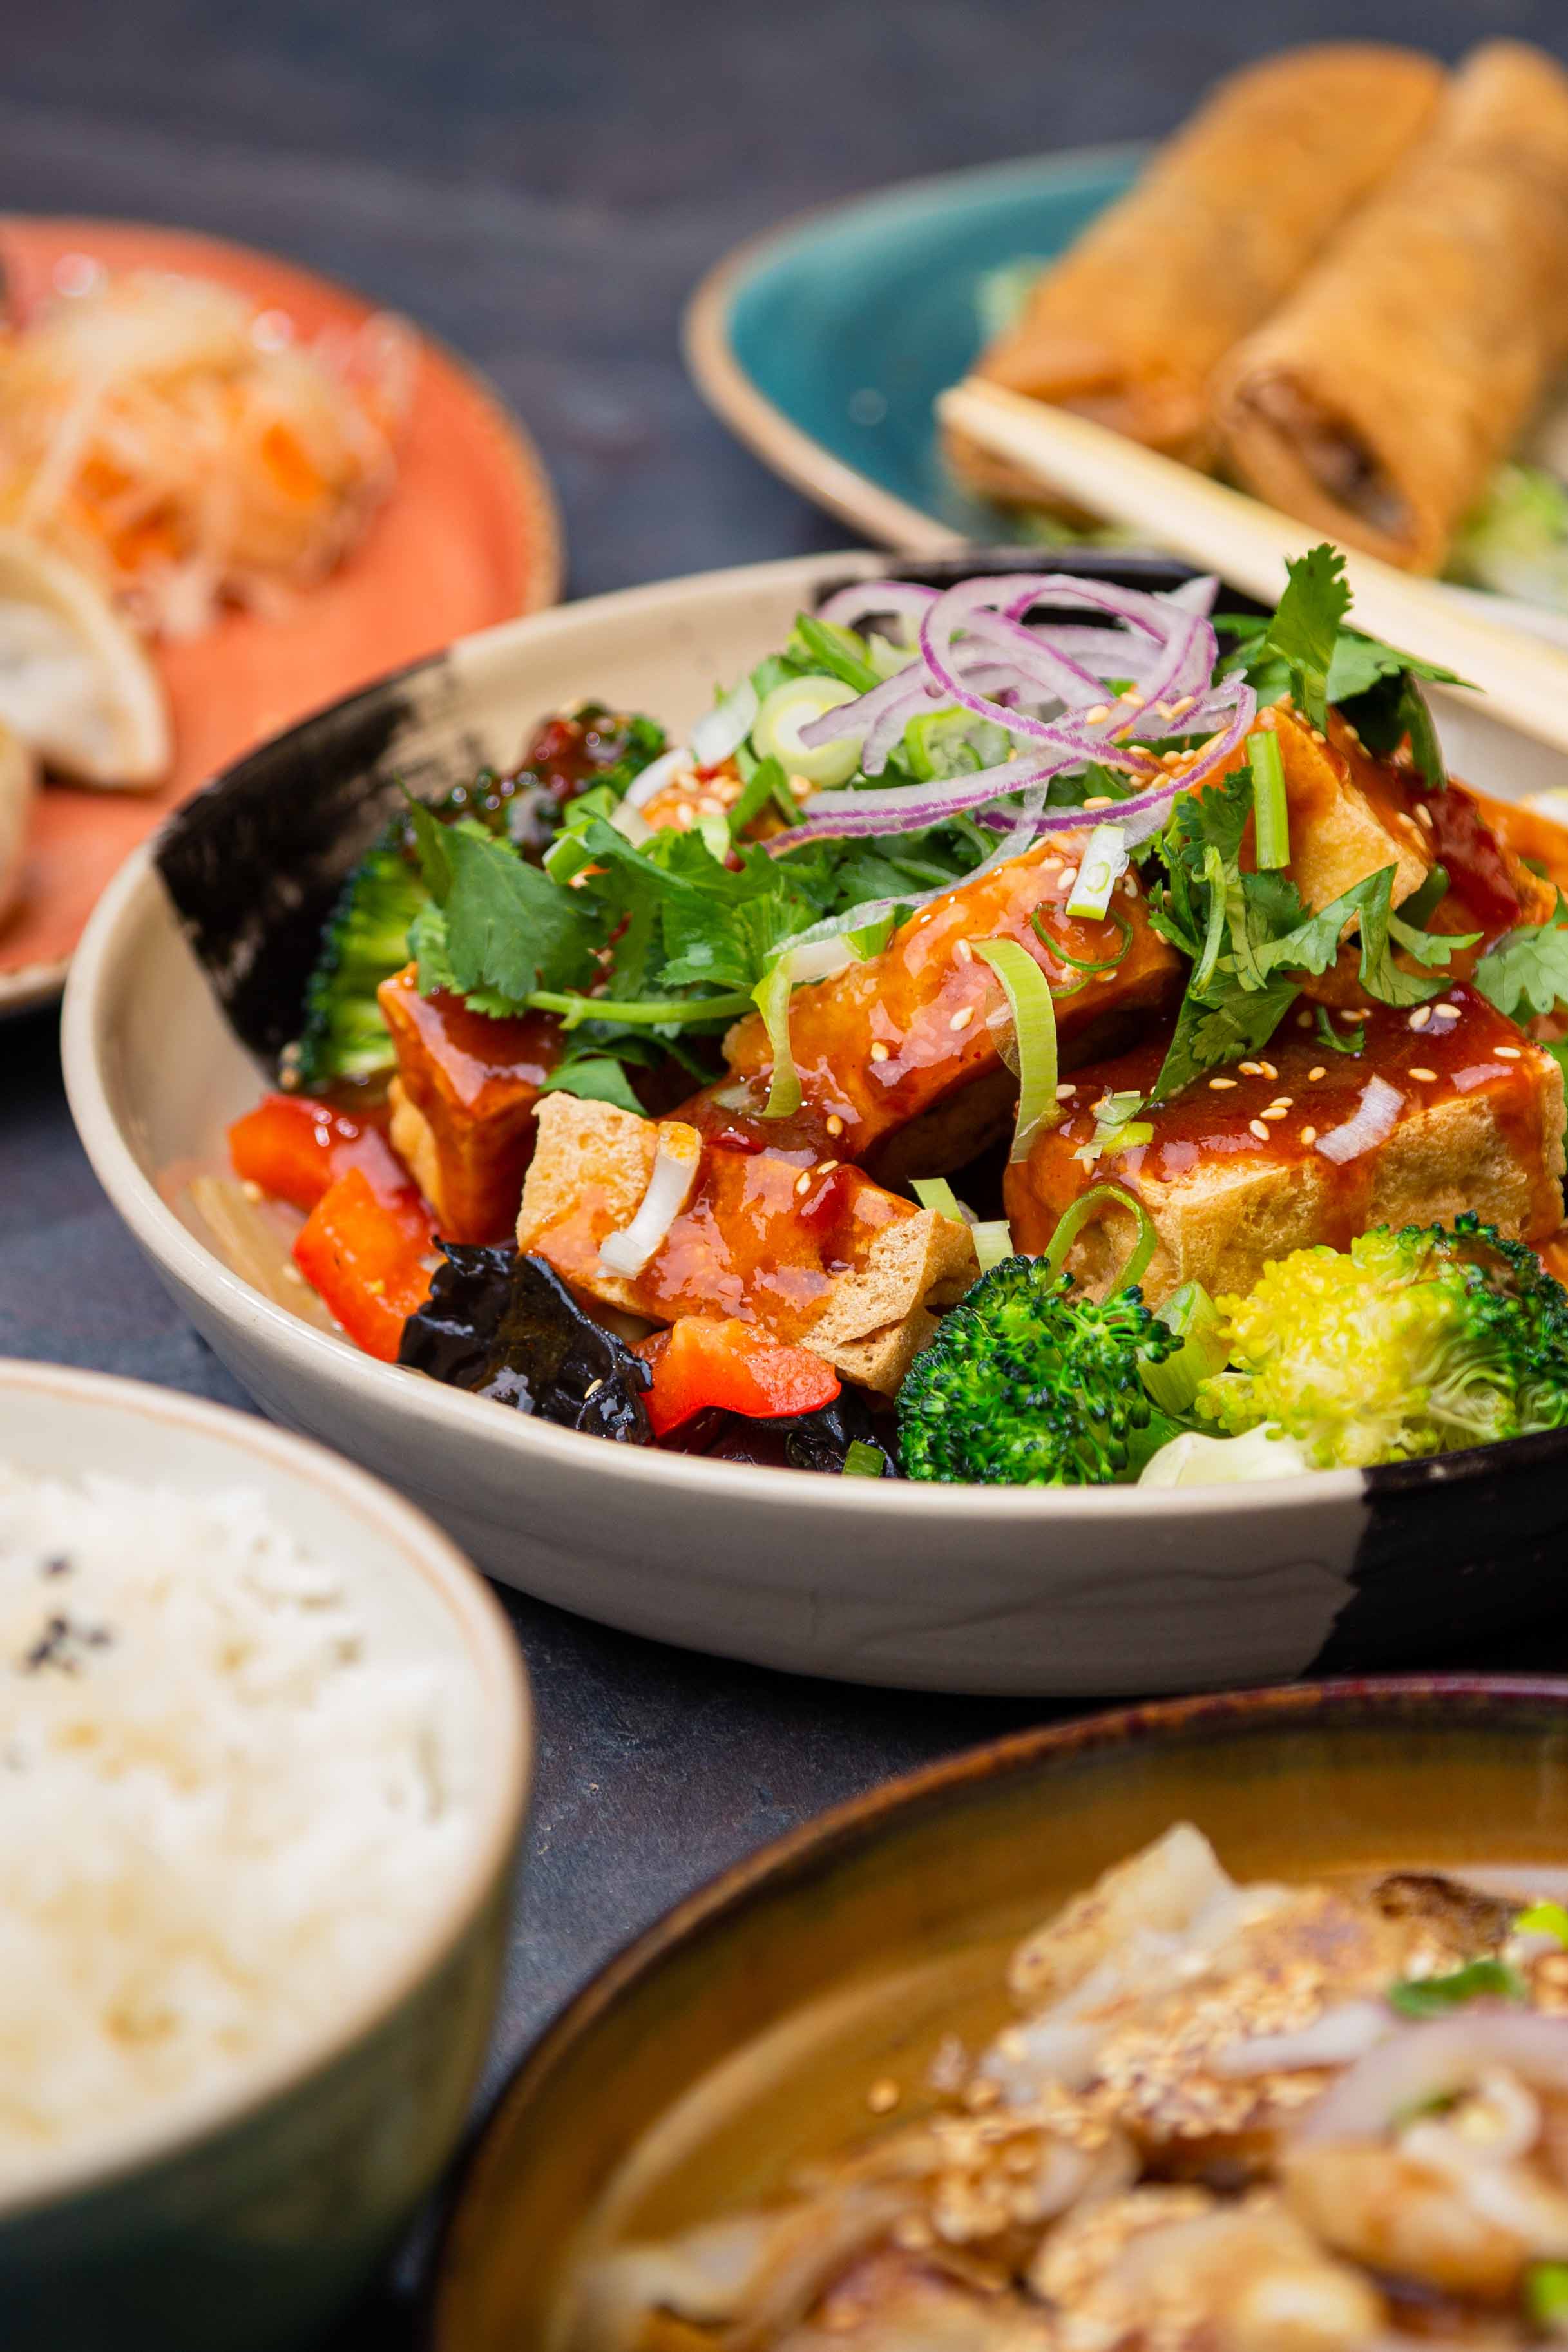 Mehrere Vorspeisen Stimmungsvoll angerichtet umkreisen eine Hauptspeise aus Tofu mit Gemüse.